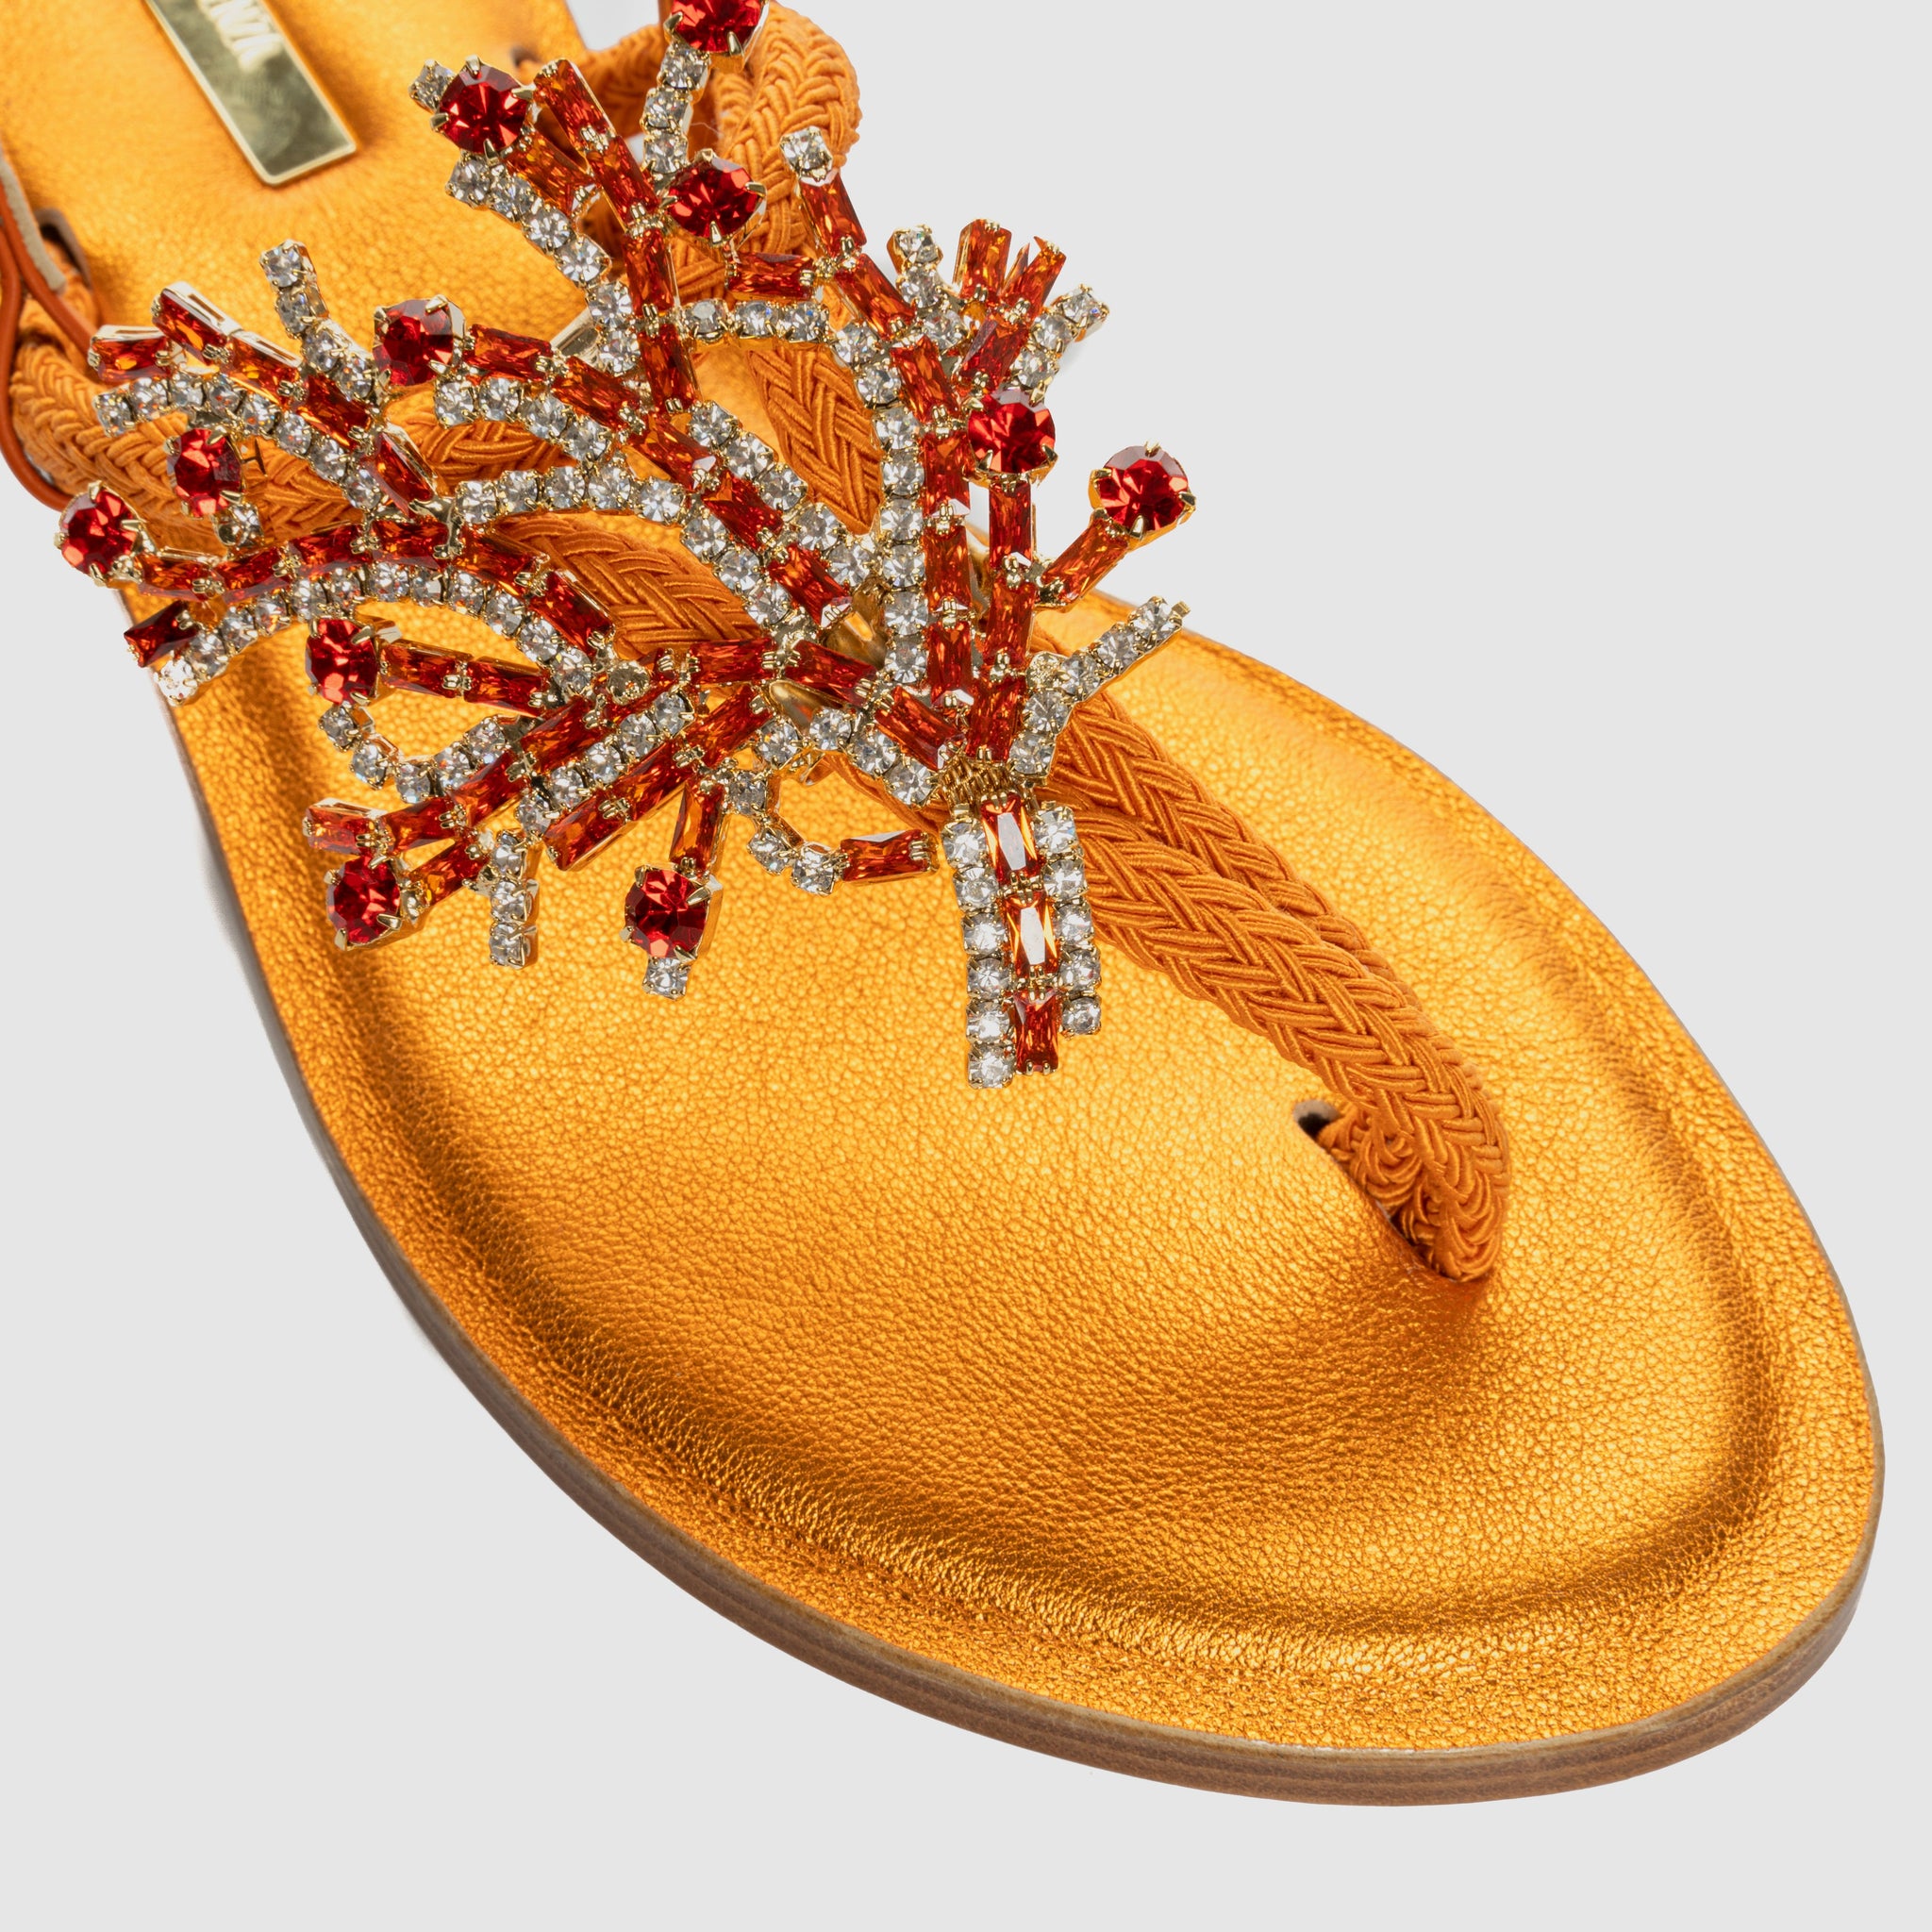 Sandalo infradito Crystal Sea con tomaia in corda di cotone impreziosita da cristalli